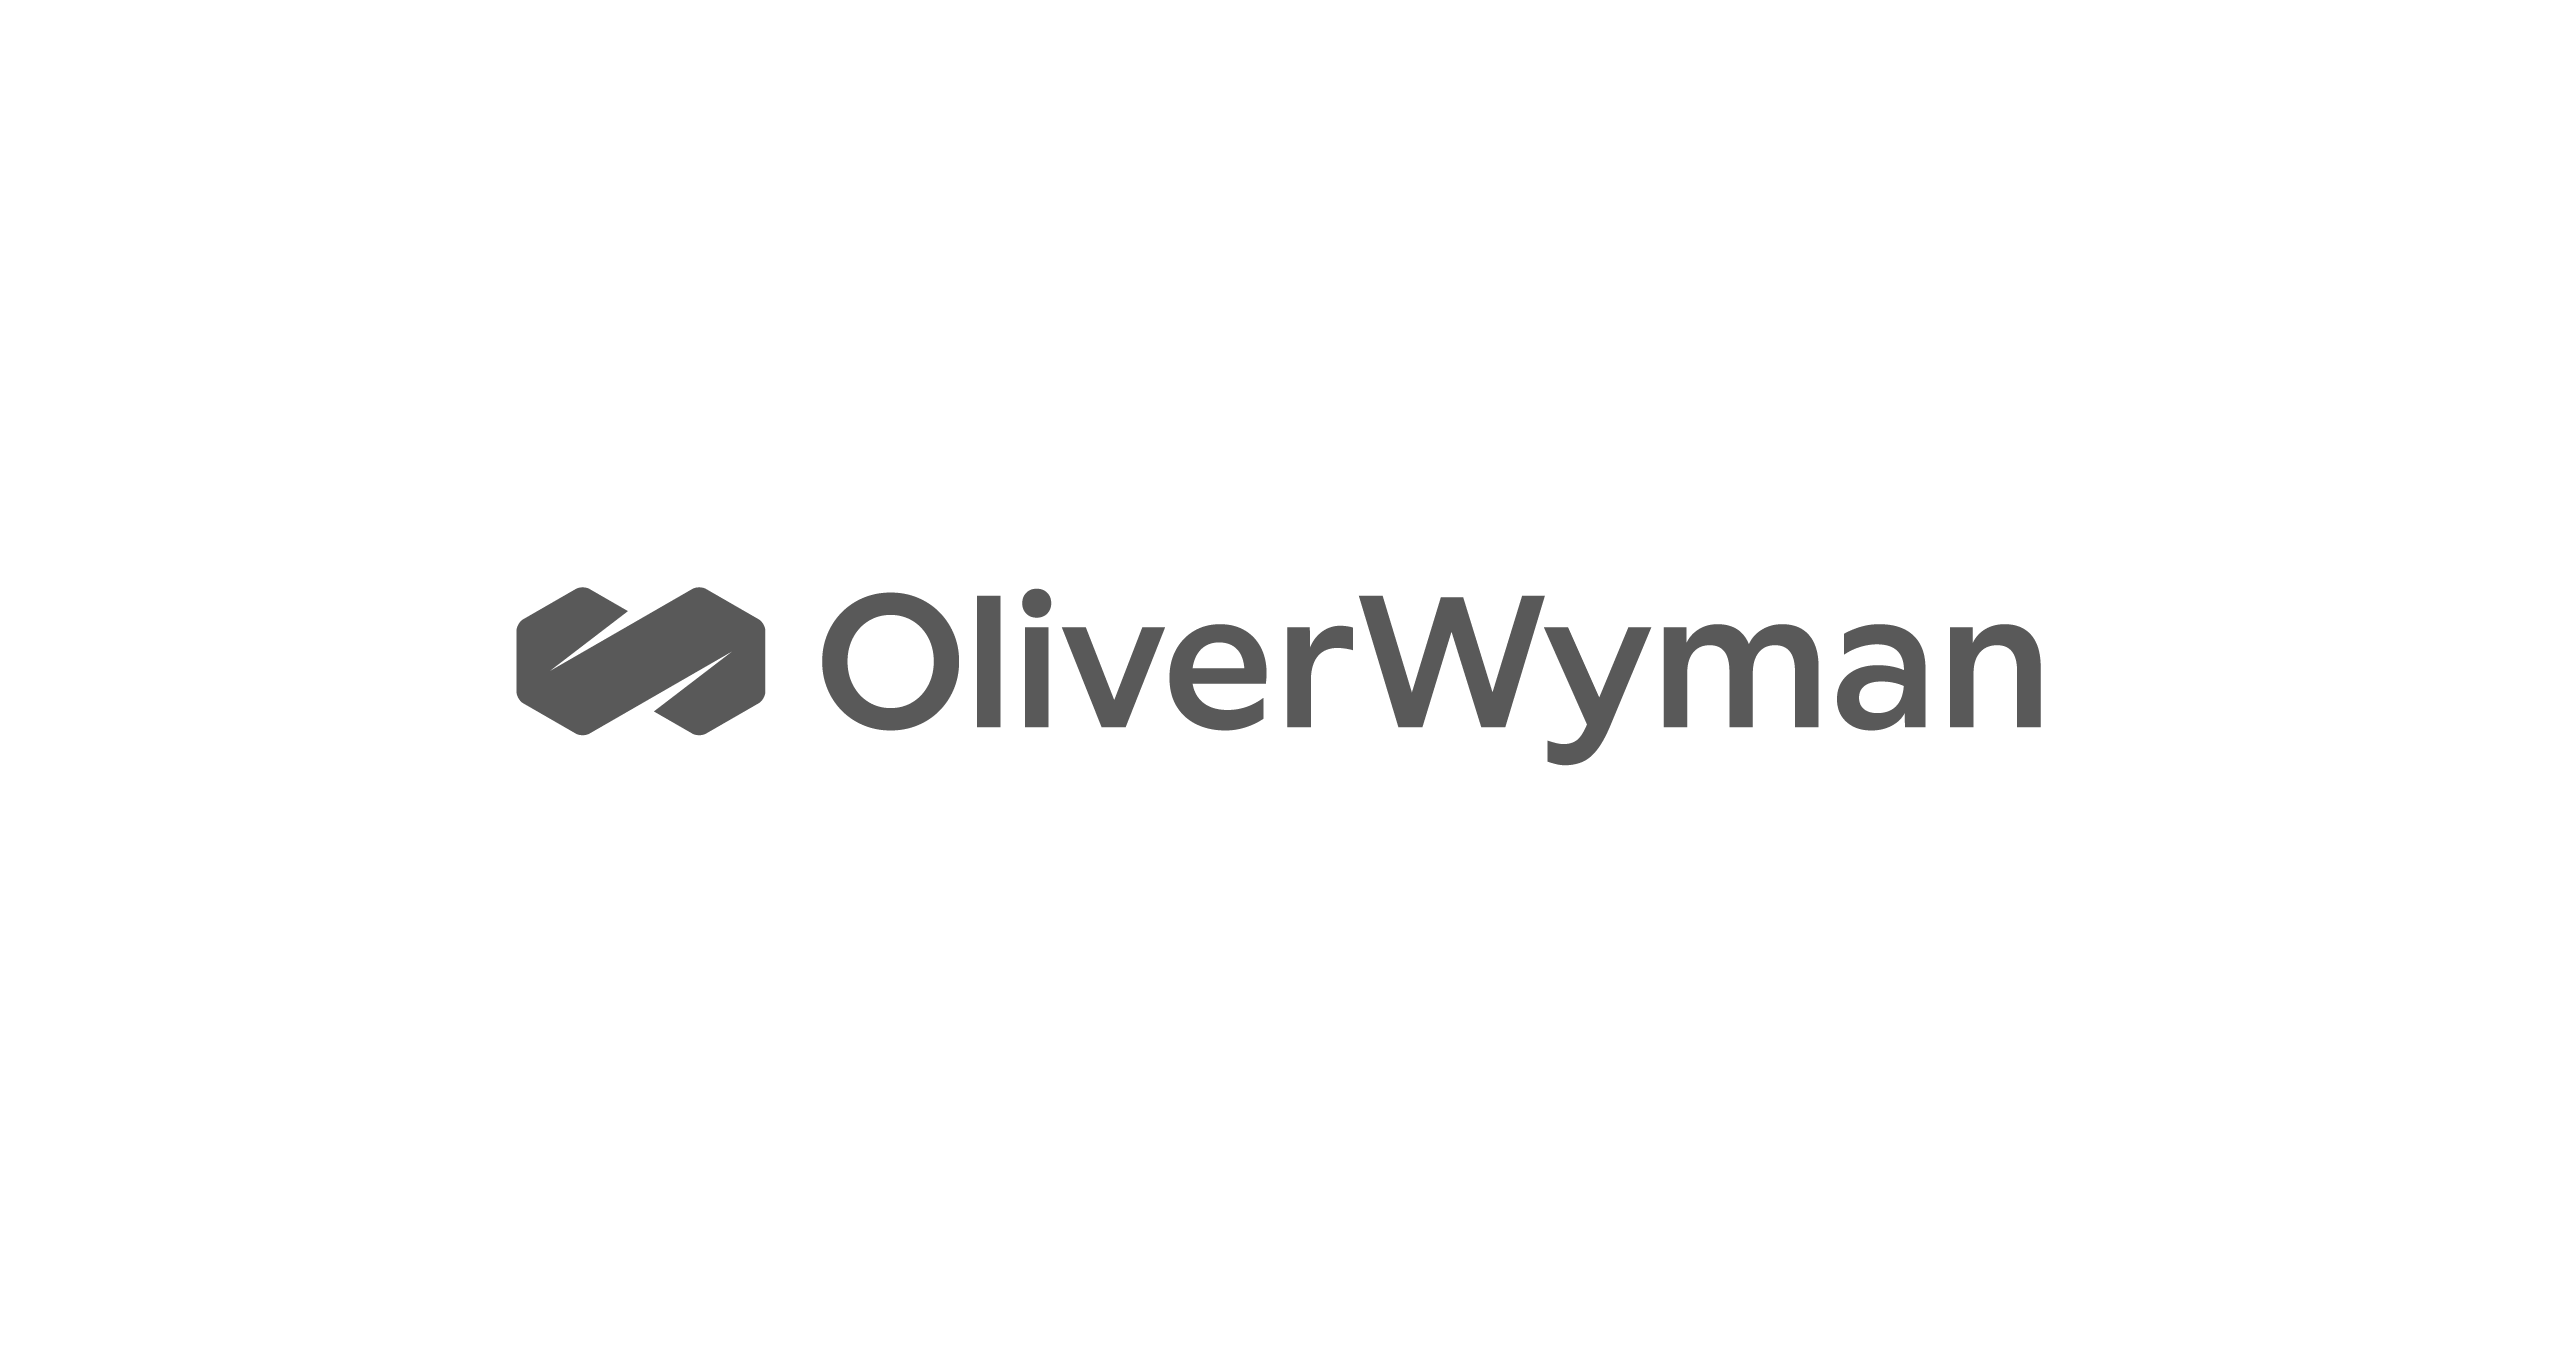 oliverWyman-grey-resized